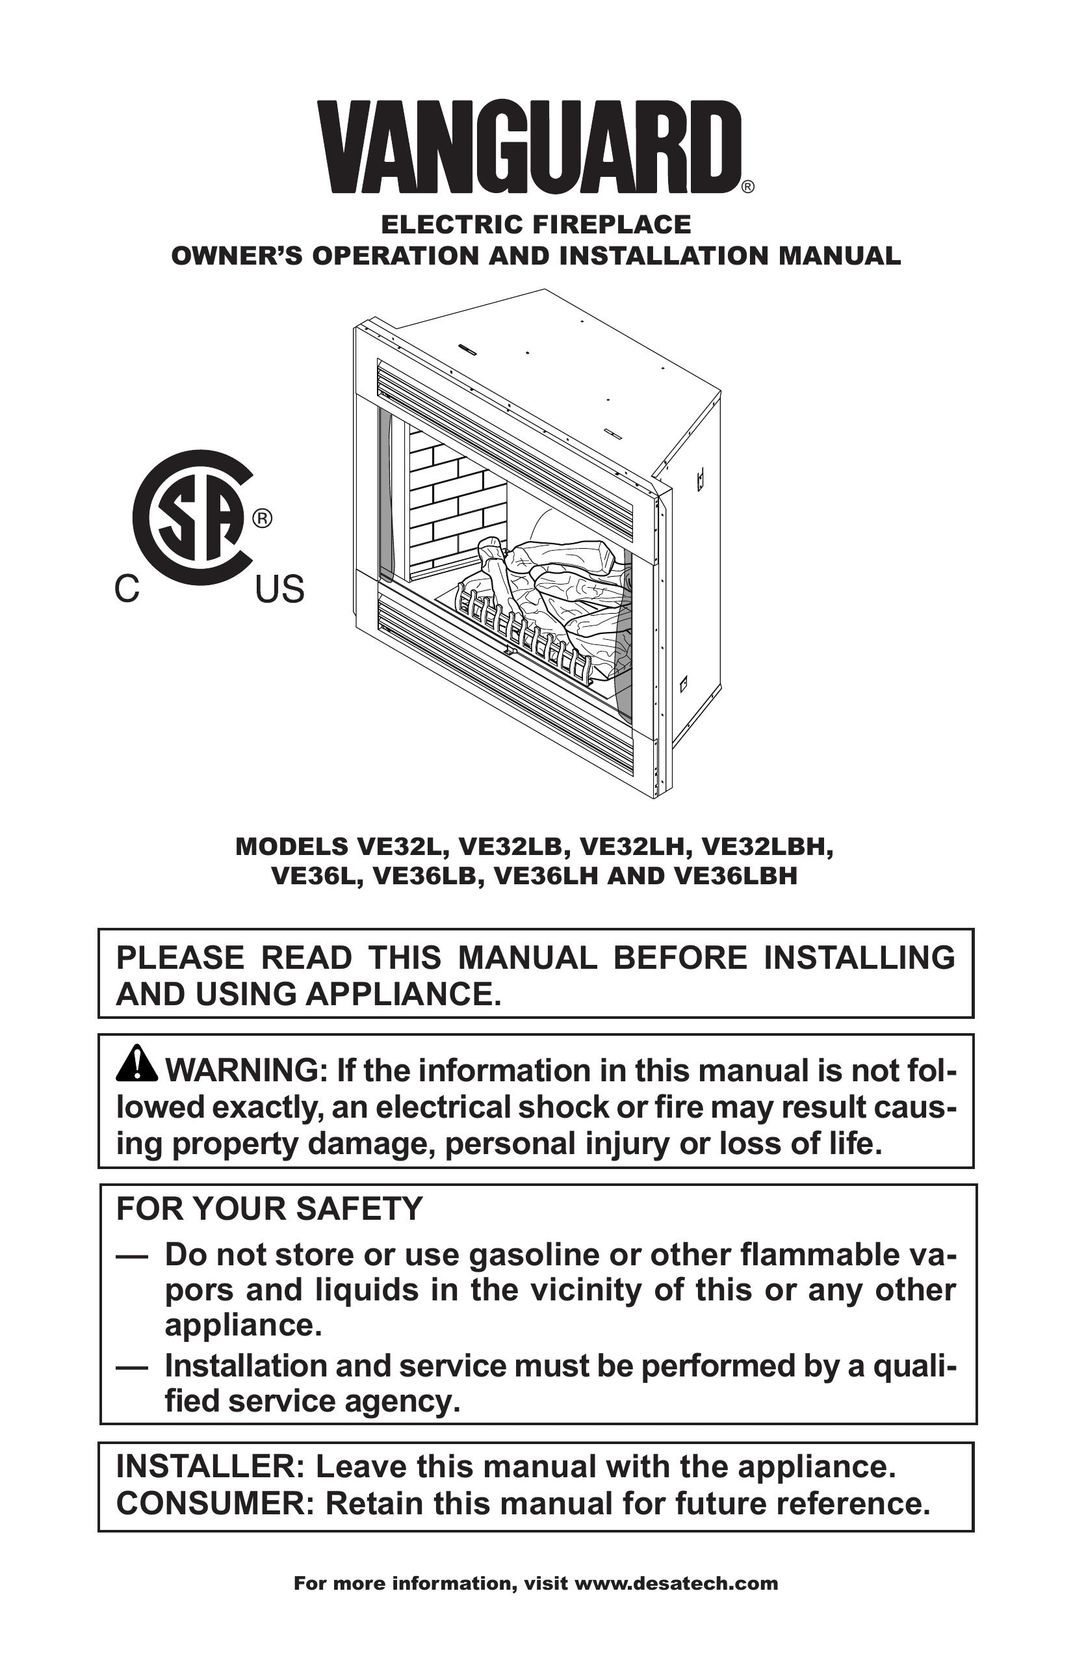 Vanguard VE36LH Indoor Fireplace User Manual